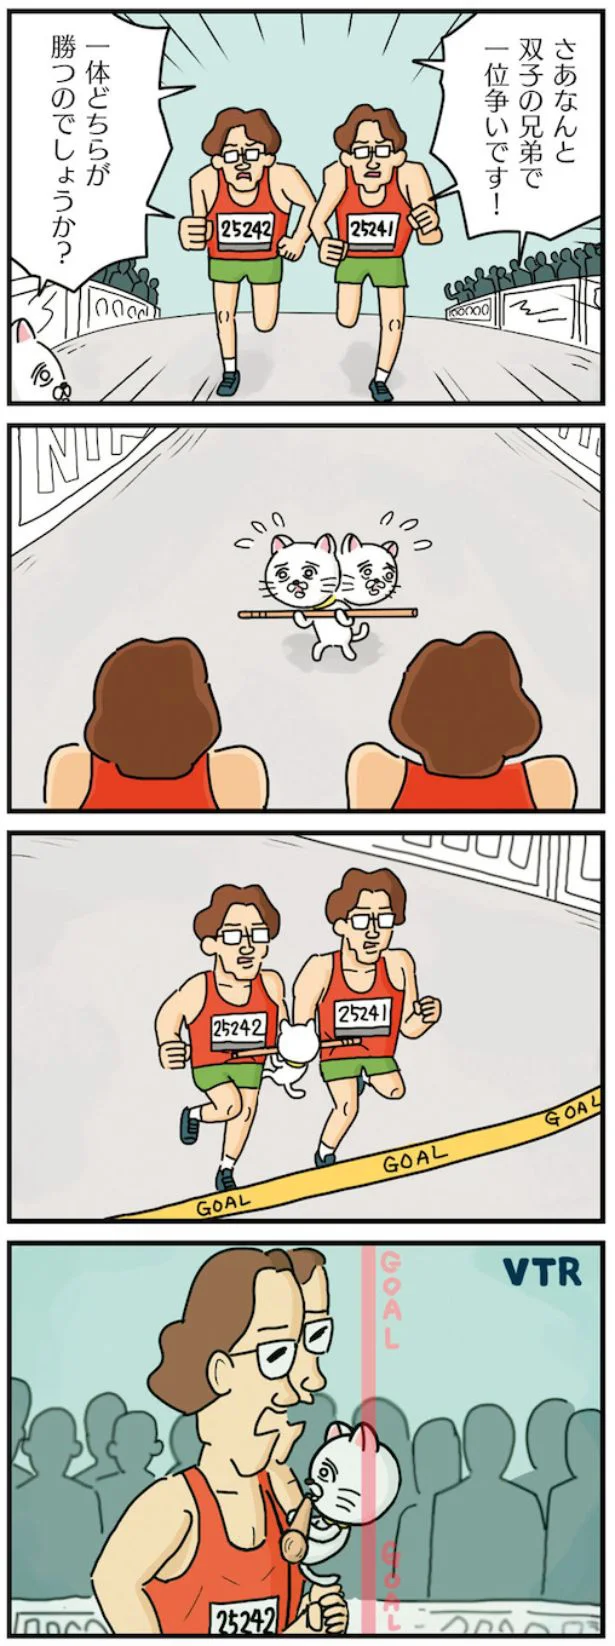 双子のマラソン選手の間に棒ネコが！